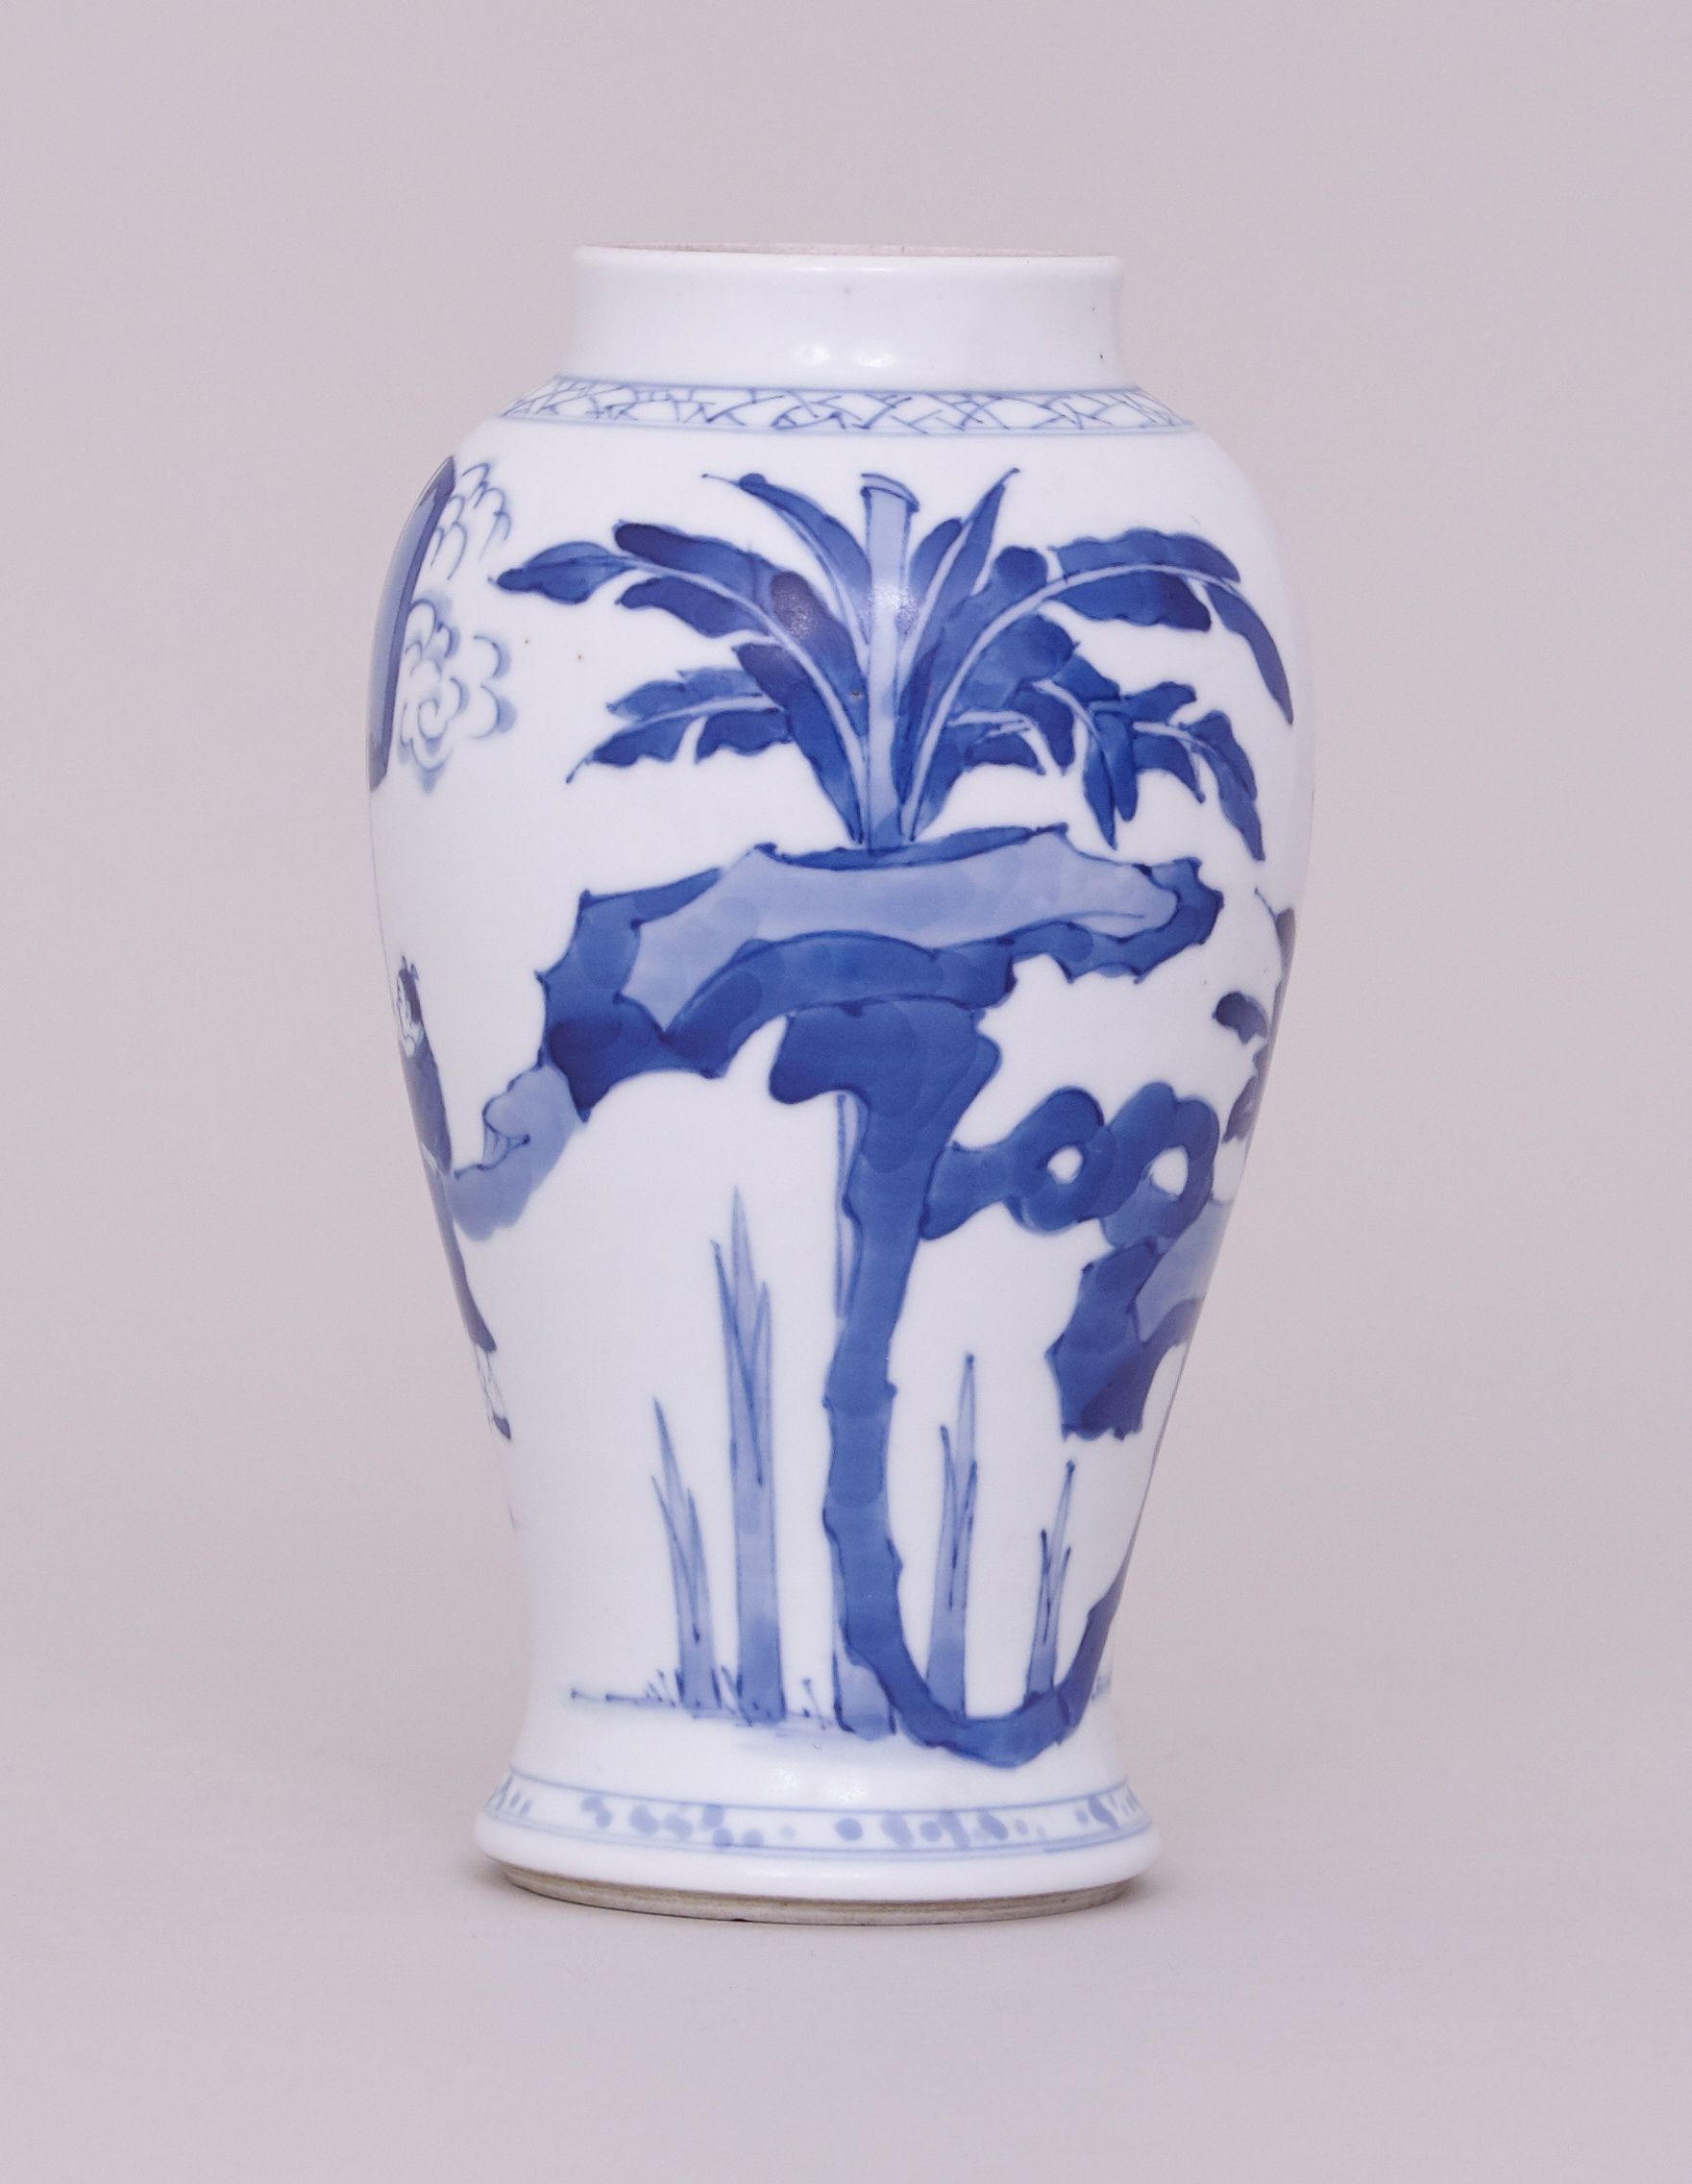 22 Stylish Chinese Style Vase 2024 free download chinese style vase of blue white vase lovely a chinese blue and white vase kangxi 1662 with blue white vase lovely a chinese blue and white vase kangxi 1662 1722